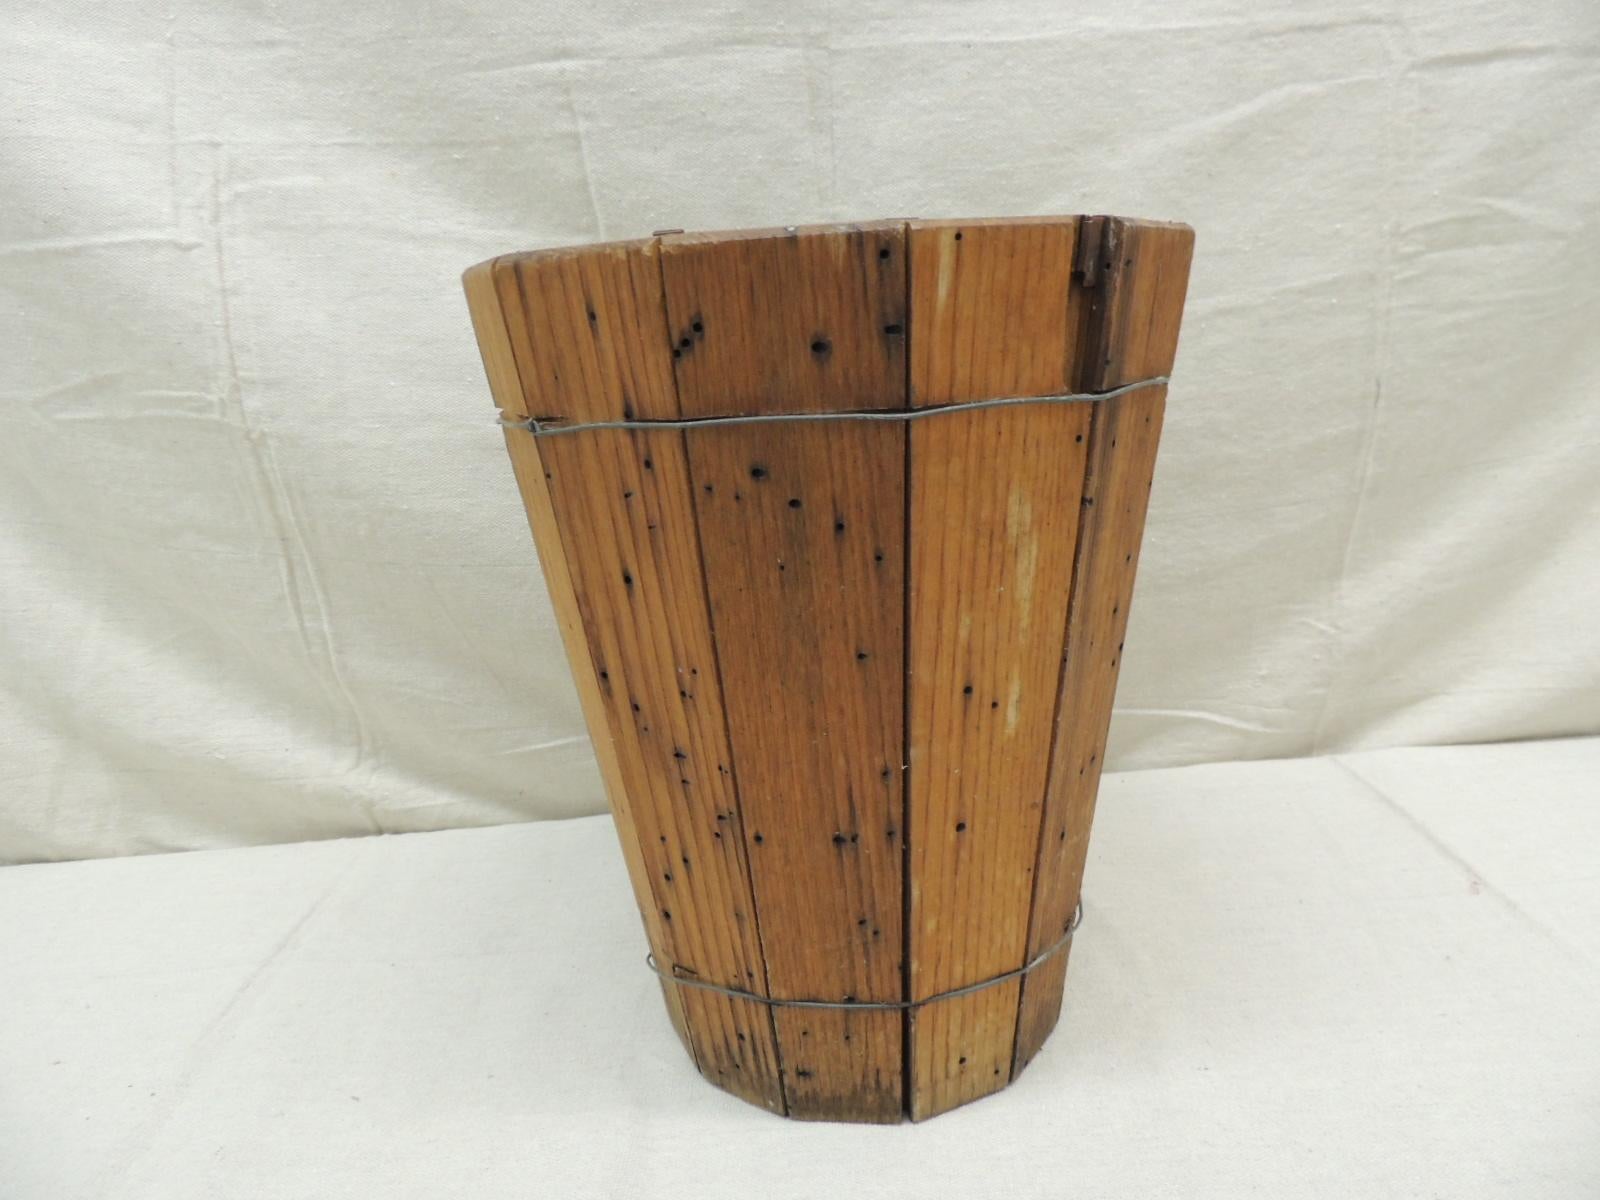 wooden barrel trash can